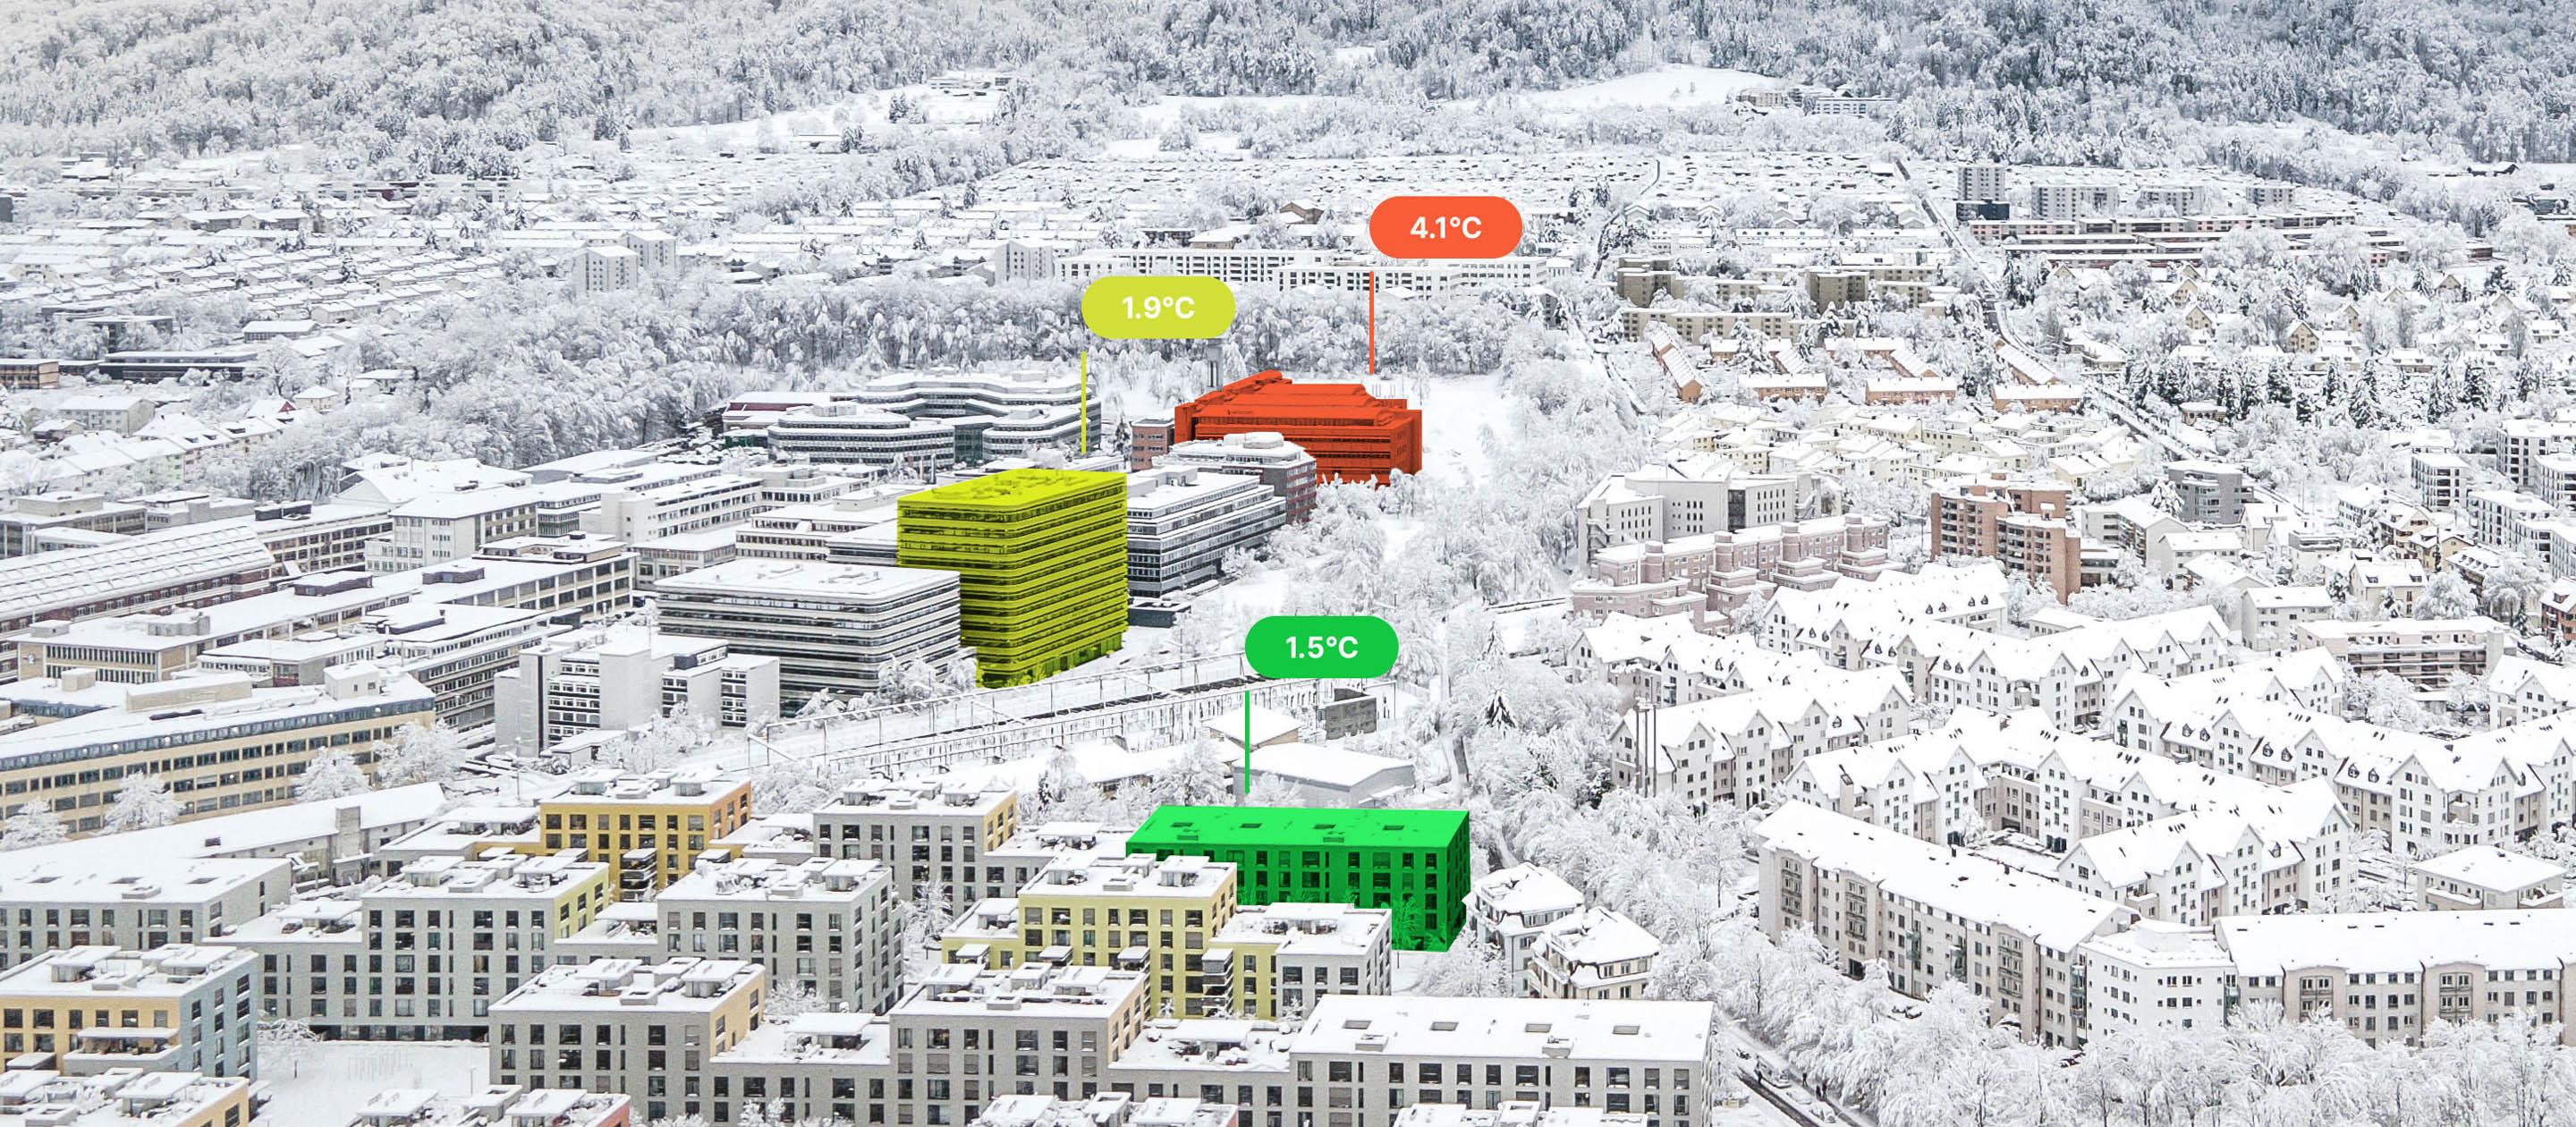 Vue d'en haut de bâtiments enneigés, dont trois sont colorés. L'un en rouge avec l'inscription 4,1°C, l'autre en jaune avec 1,9°C et le troisième en vert avec 1,5°C.